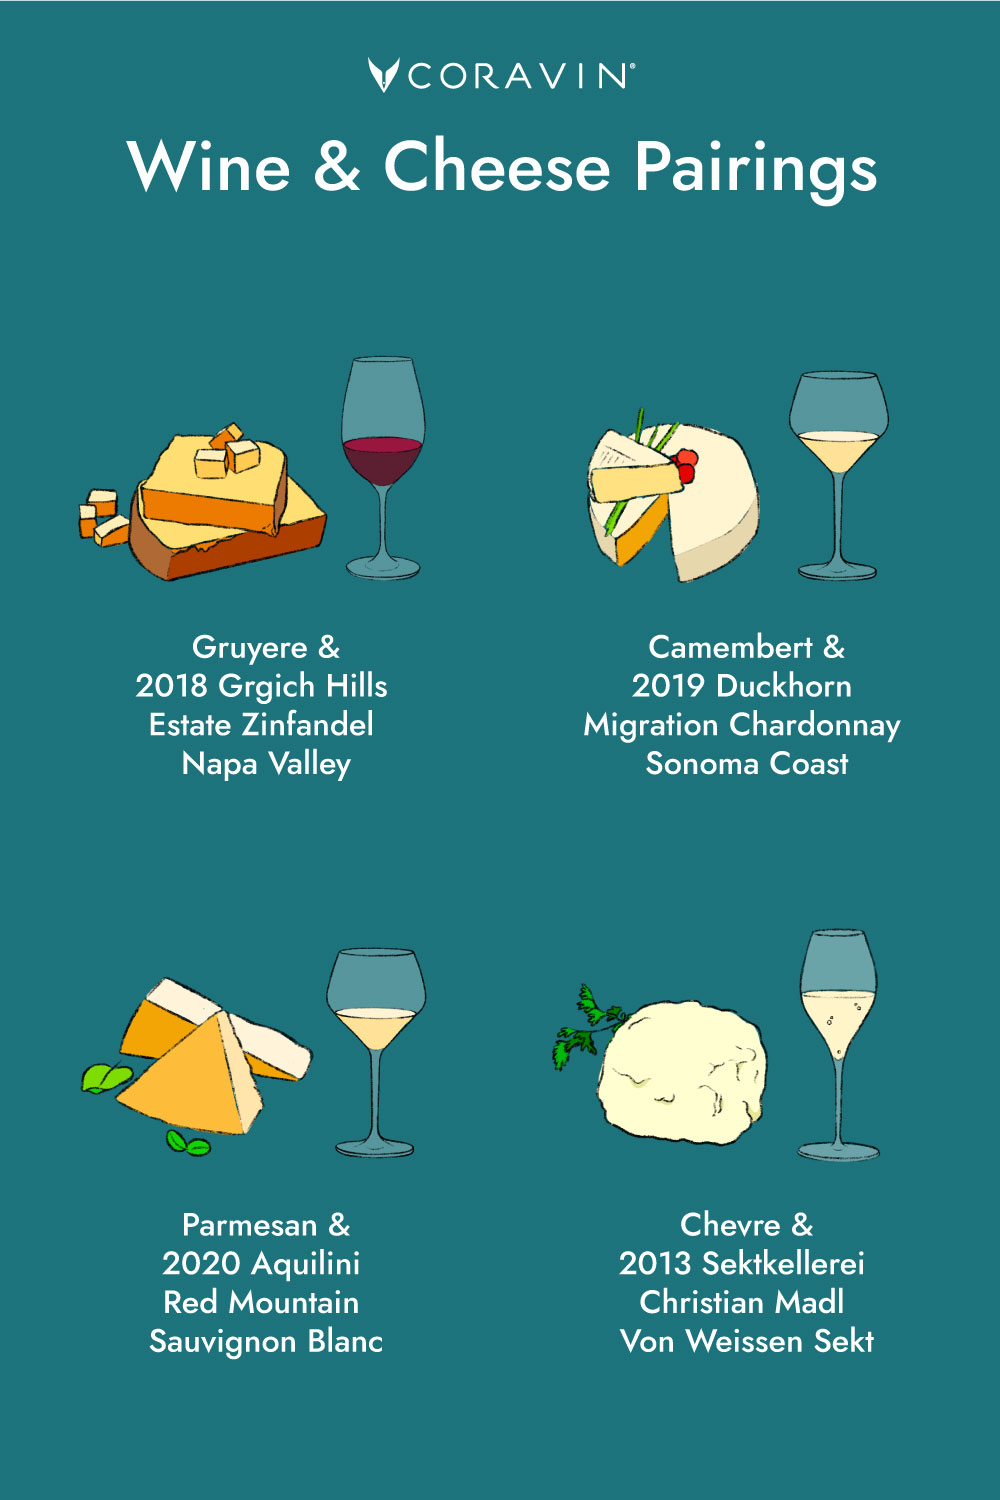 II. Understanding the Basics of Pairing Cheese and Wine